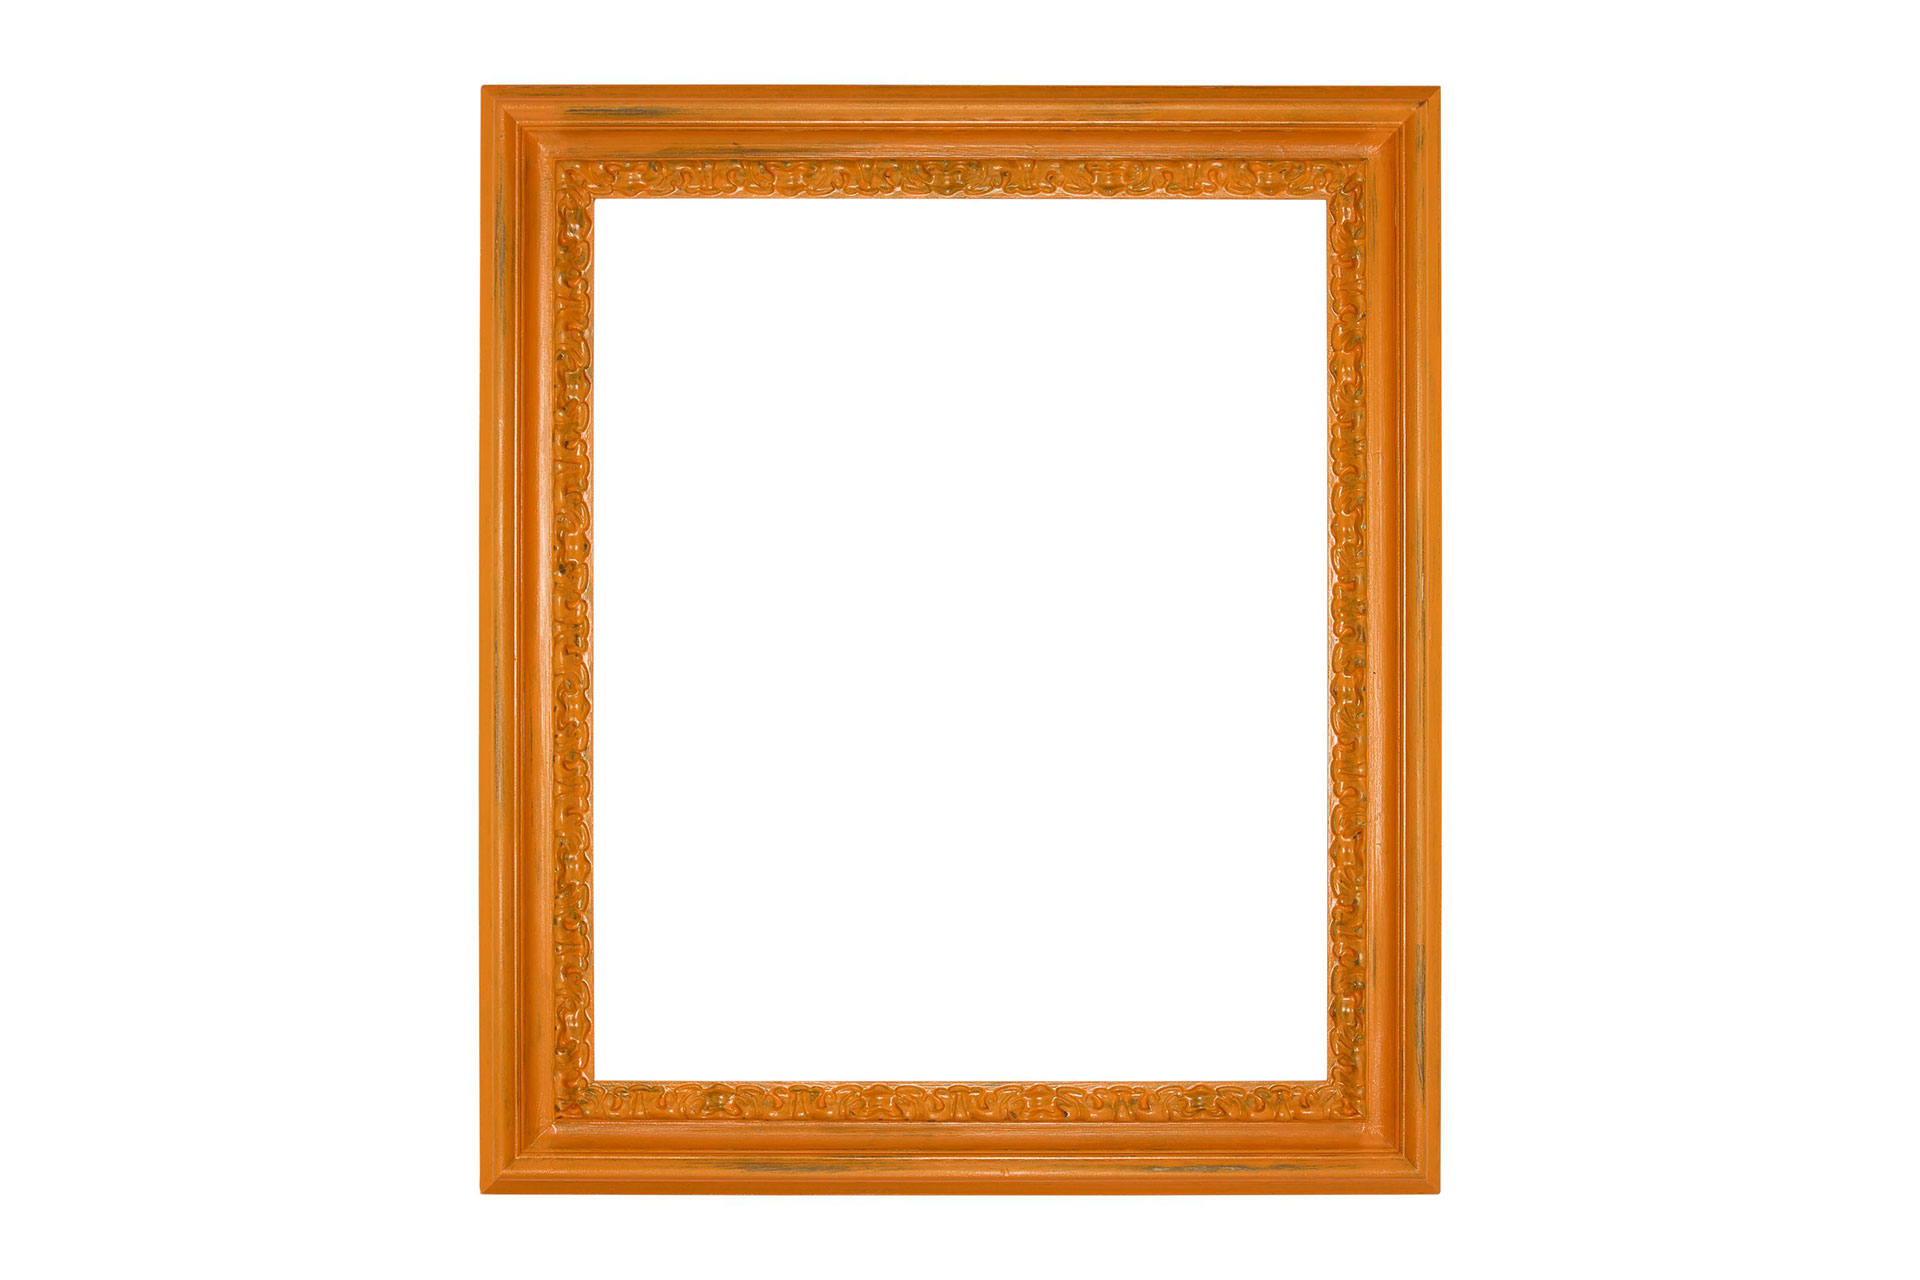 Wandspiegel Modell Metz, Spiegel: Facettenspiegel, Shabby-Chic Style, Design/Farbe:  Braun/Orange, Raum: Flur, Innenbereich, Schlafzimmer, Wohnzimmer, Frontansicht Rahmen